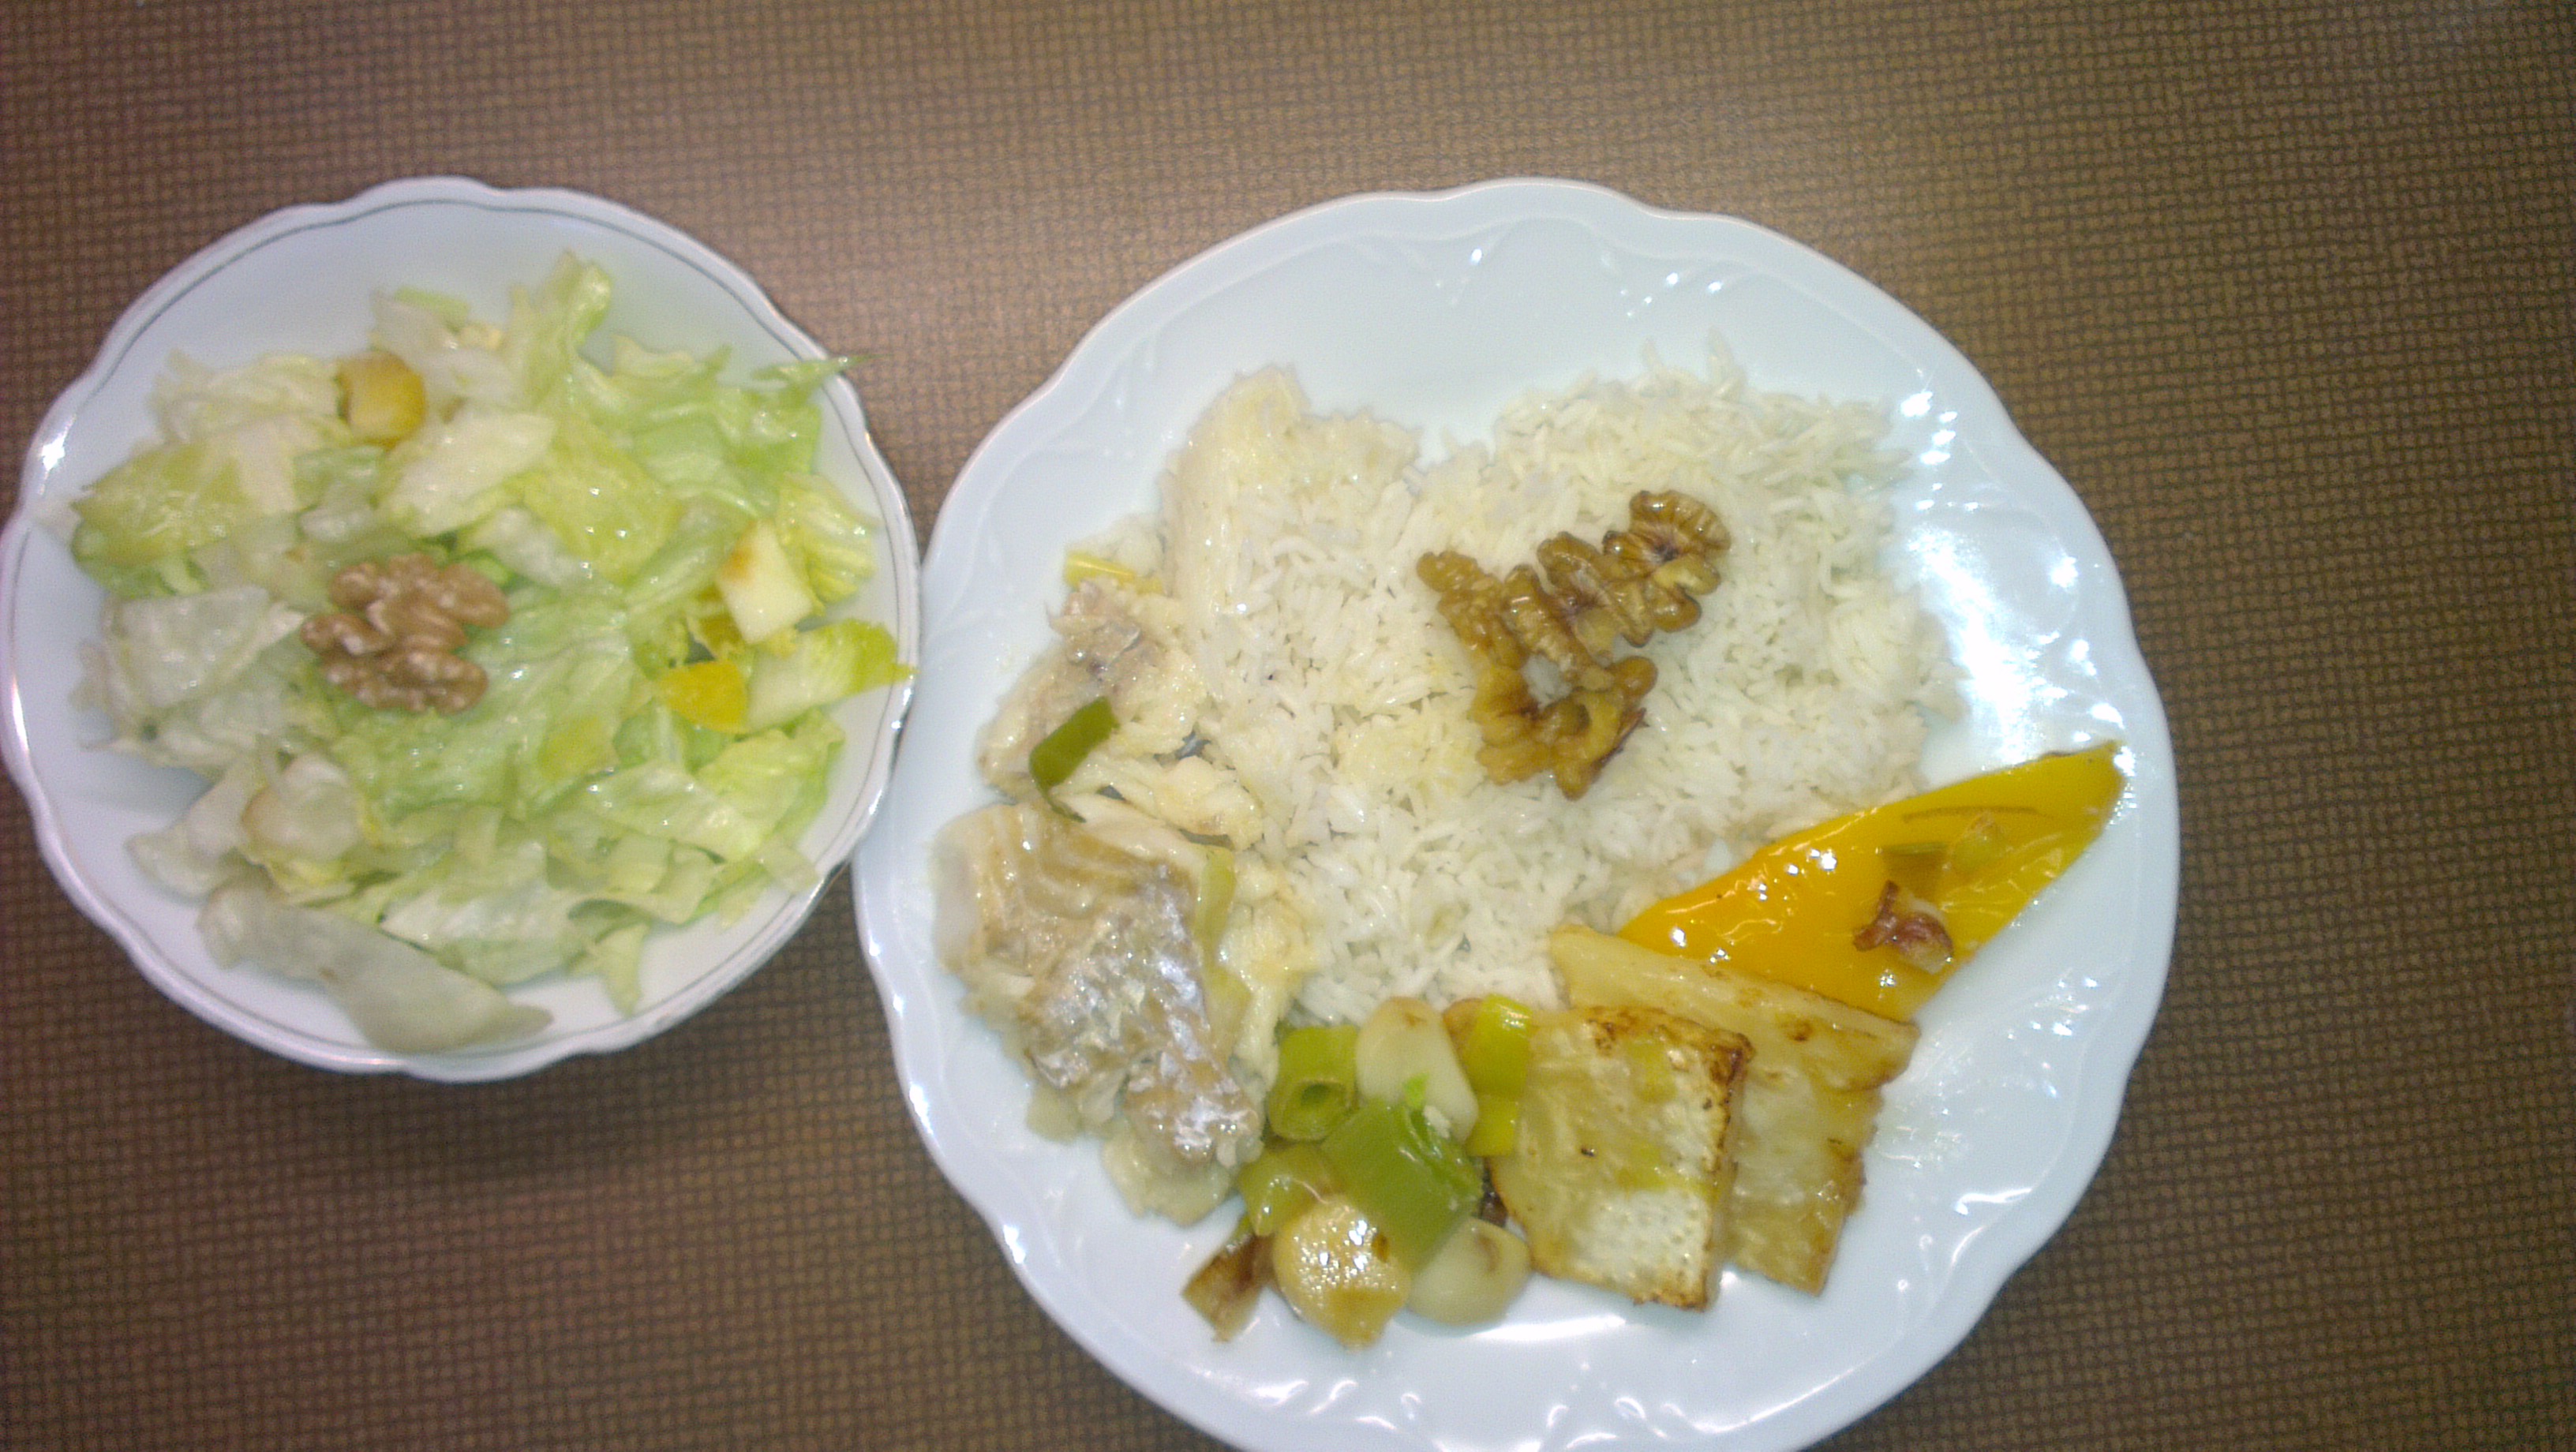 ryba, pórek, paprika, celer, česnek a rýže s ořechy a ledový salát s jablkem